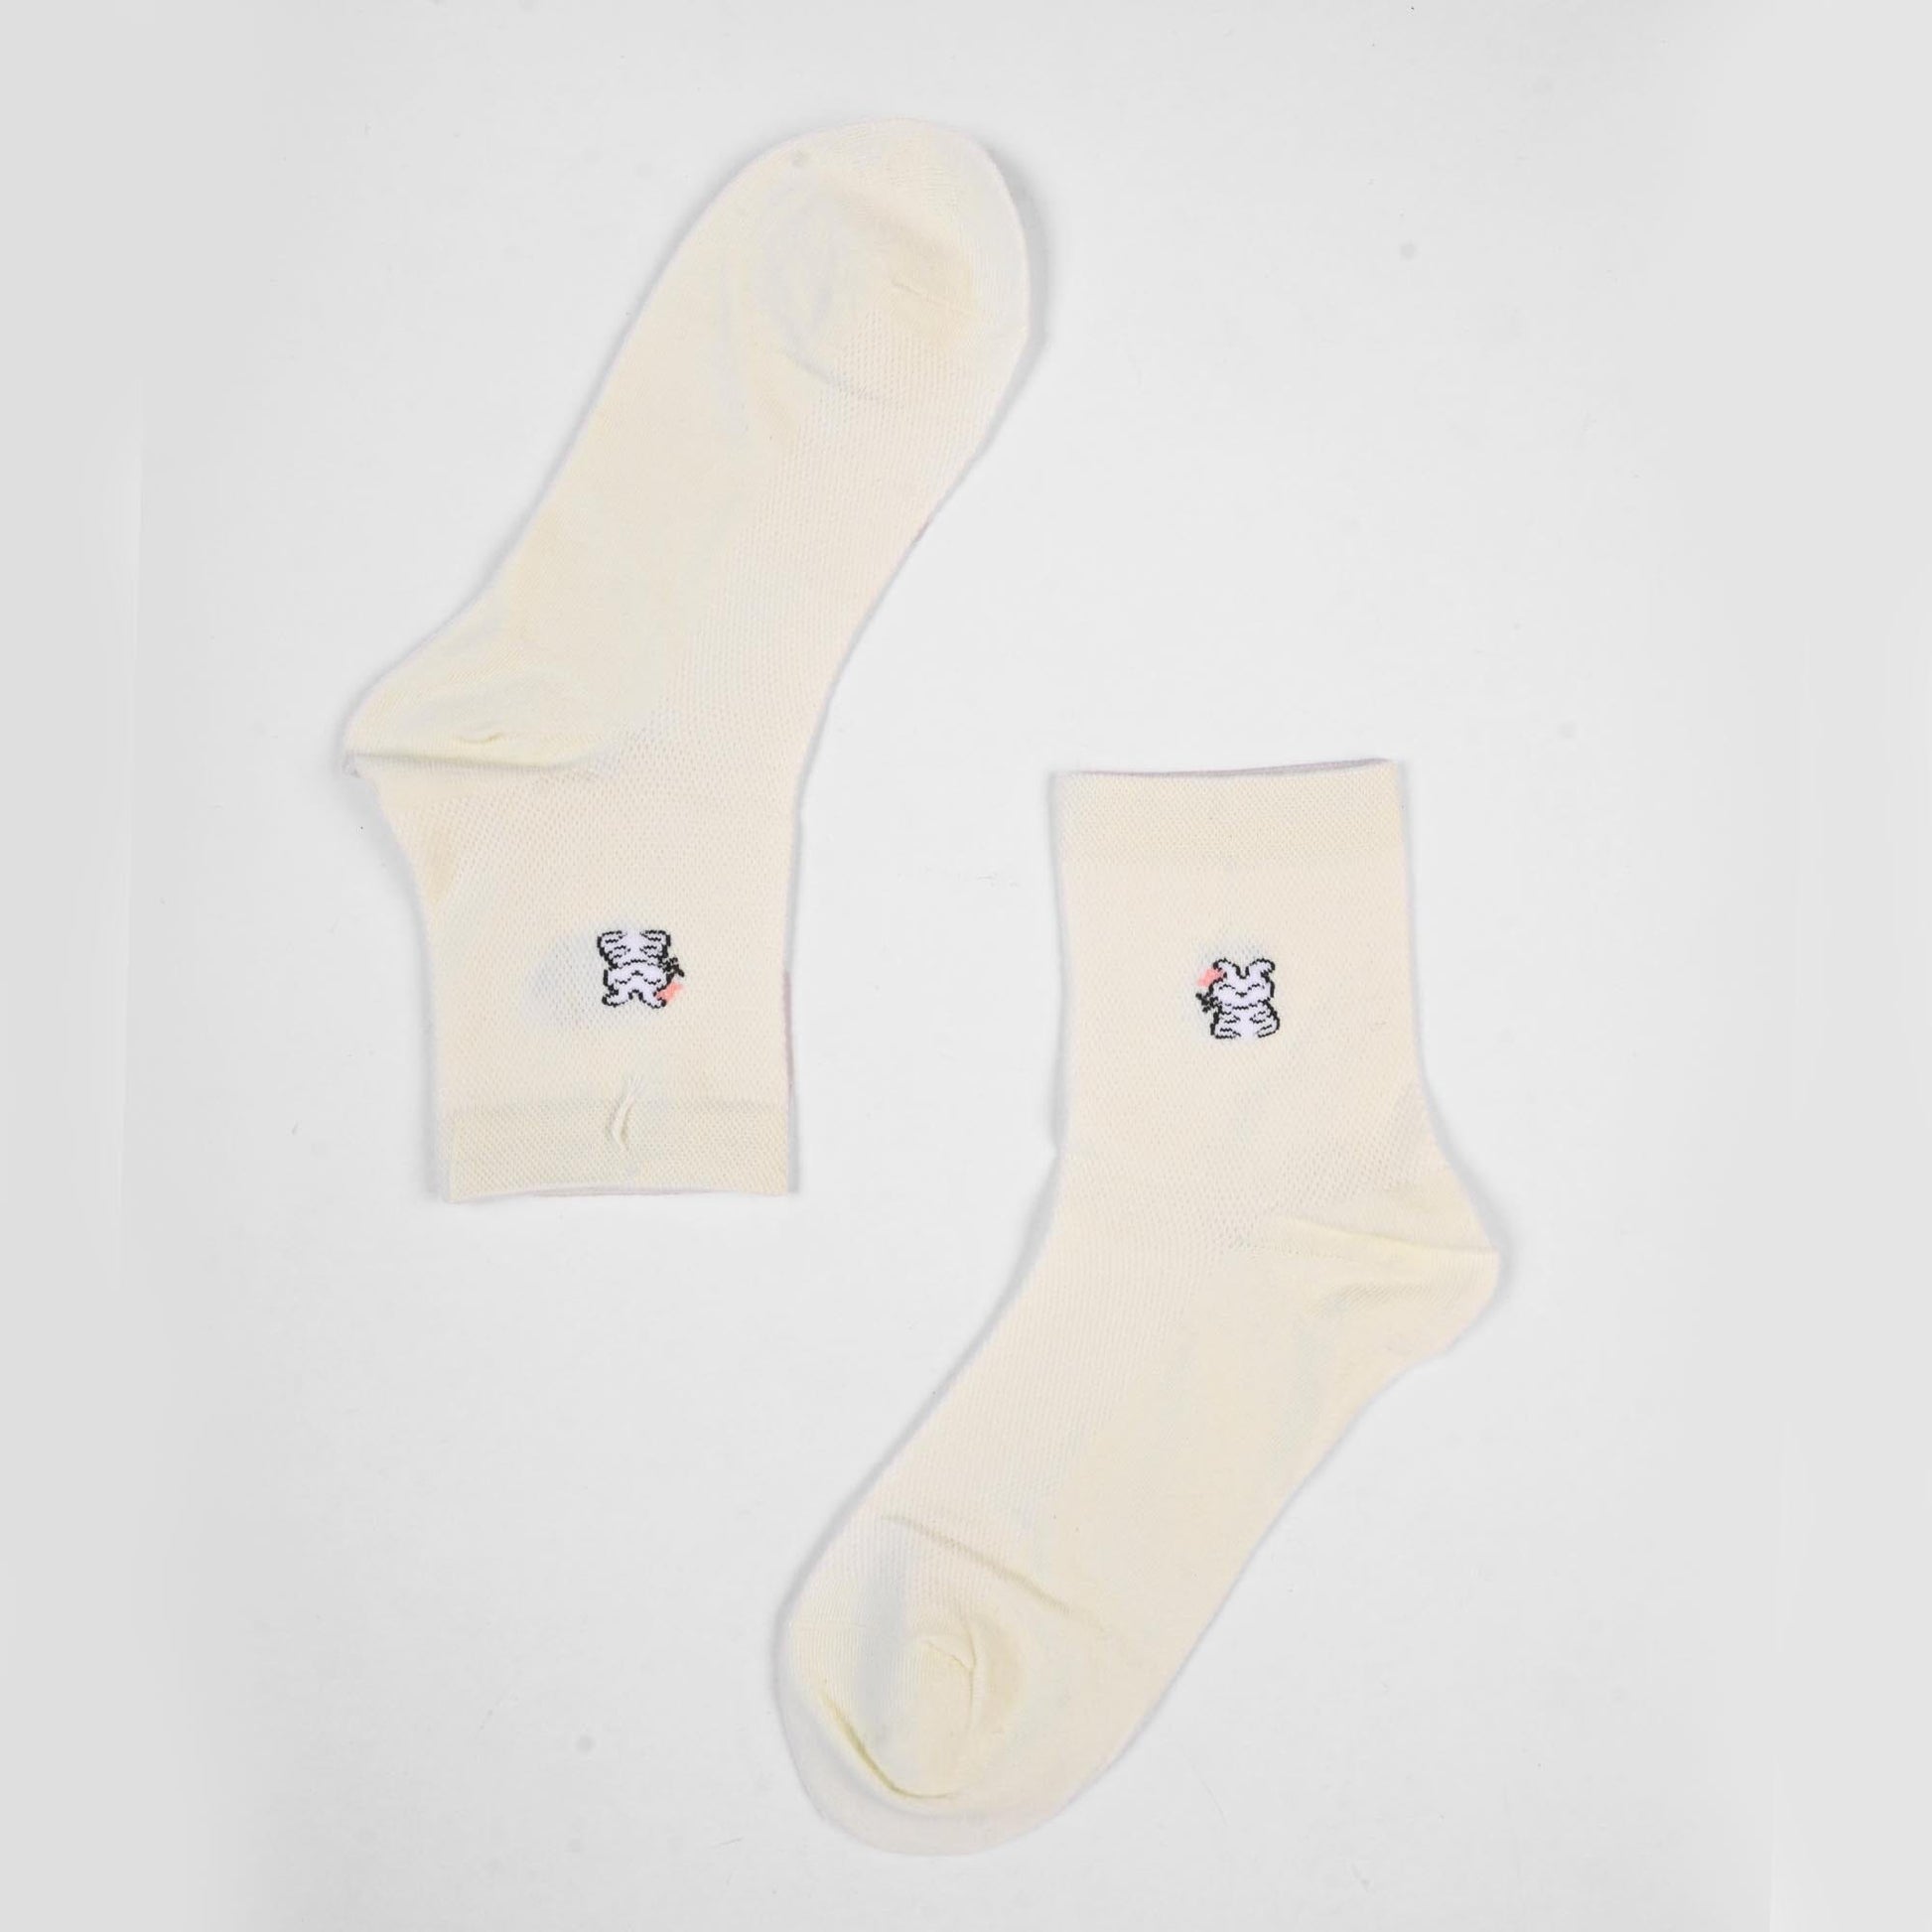 Vienna Women's Graz Anklet Socks Socks SRL Light Mint D5 EUR 35-40